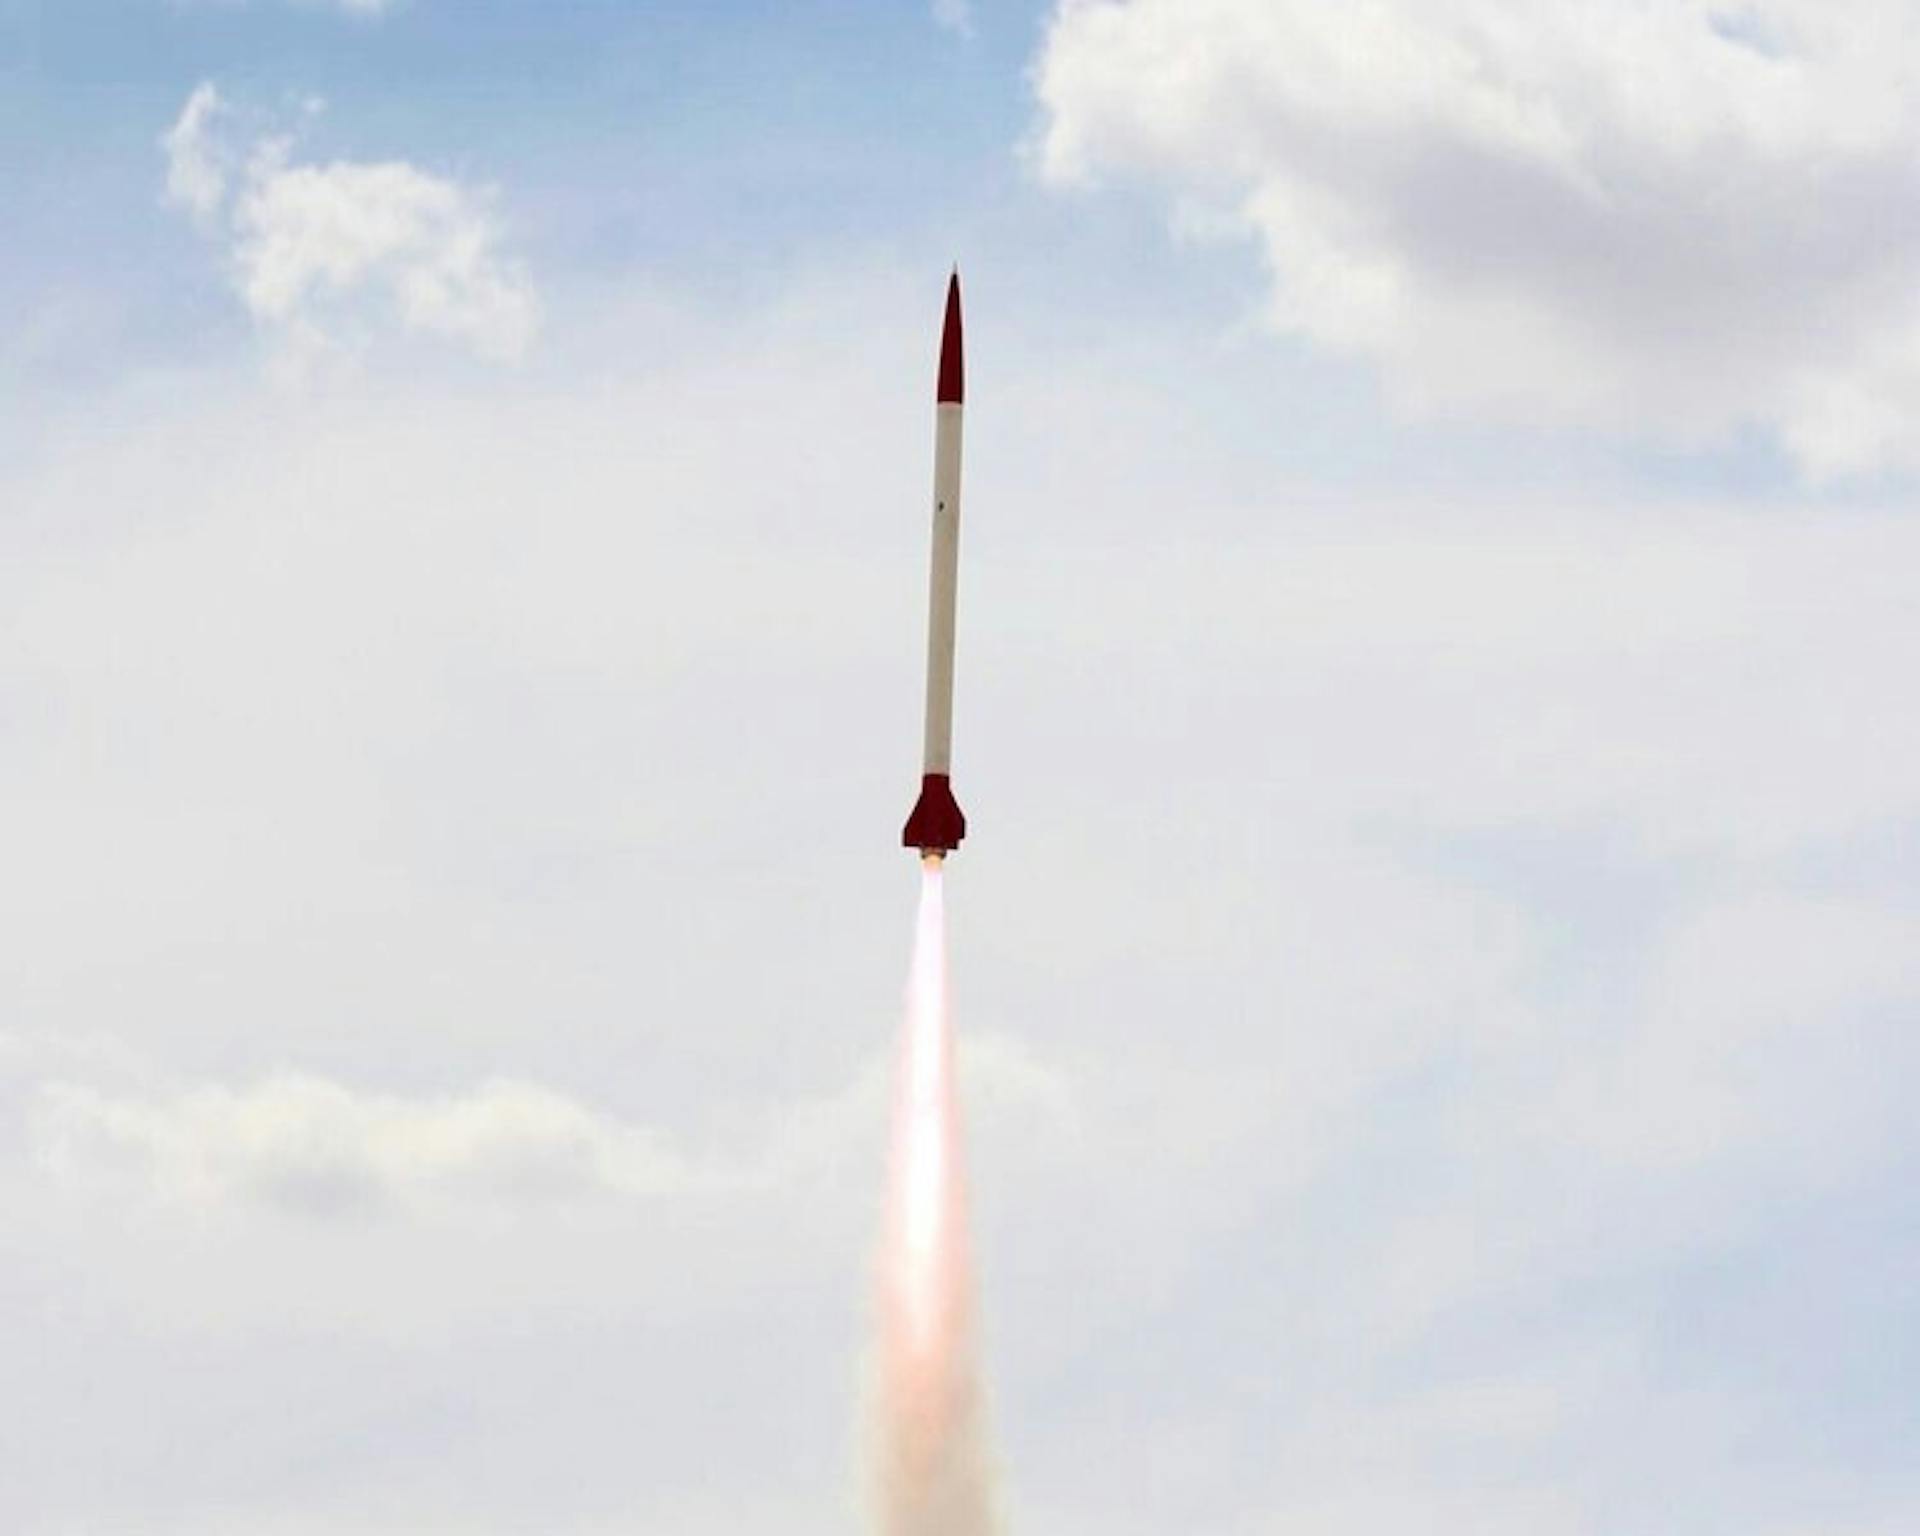 Hermes I 成功发射到 32,000 英尺，并在名义上被回收。